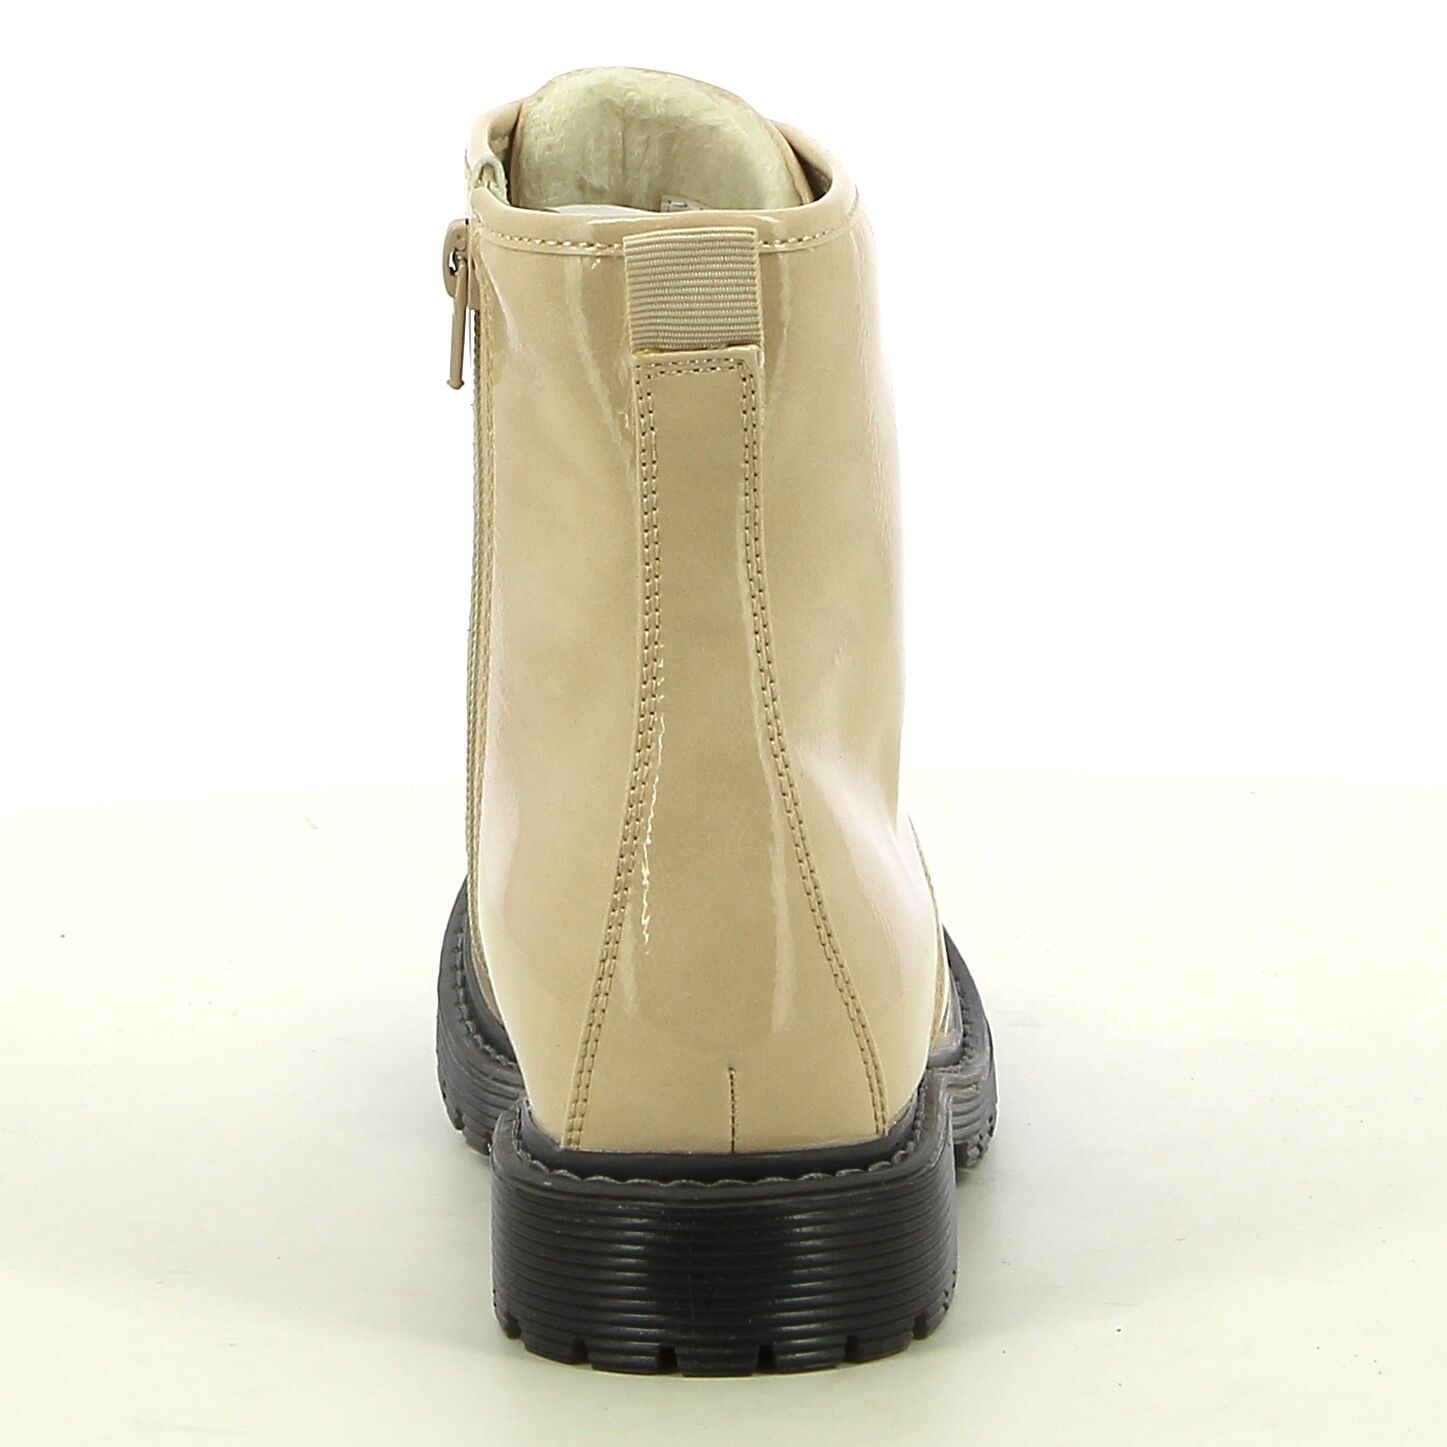  Ken Shoe Fashion - Beige - Boots